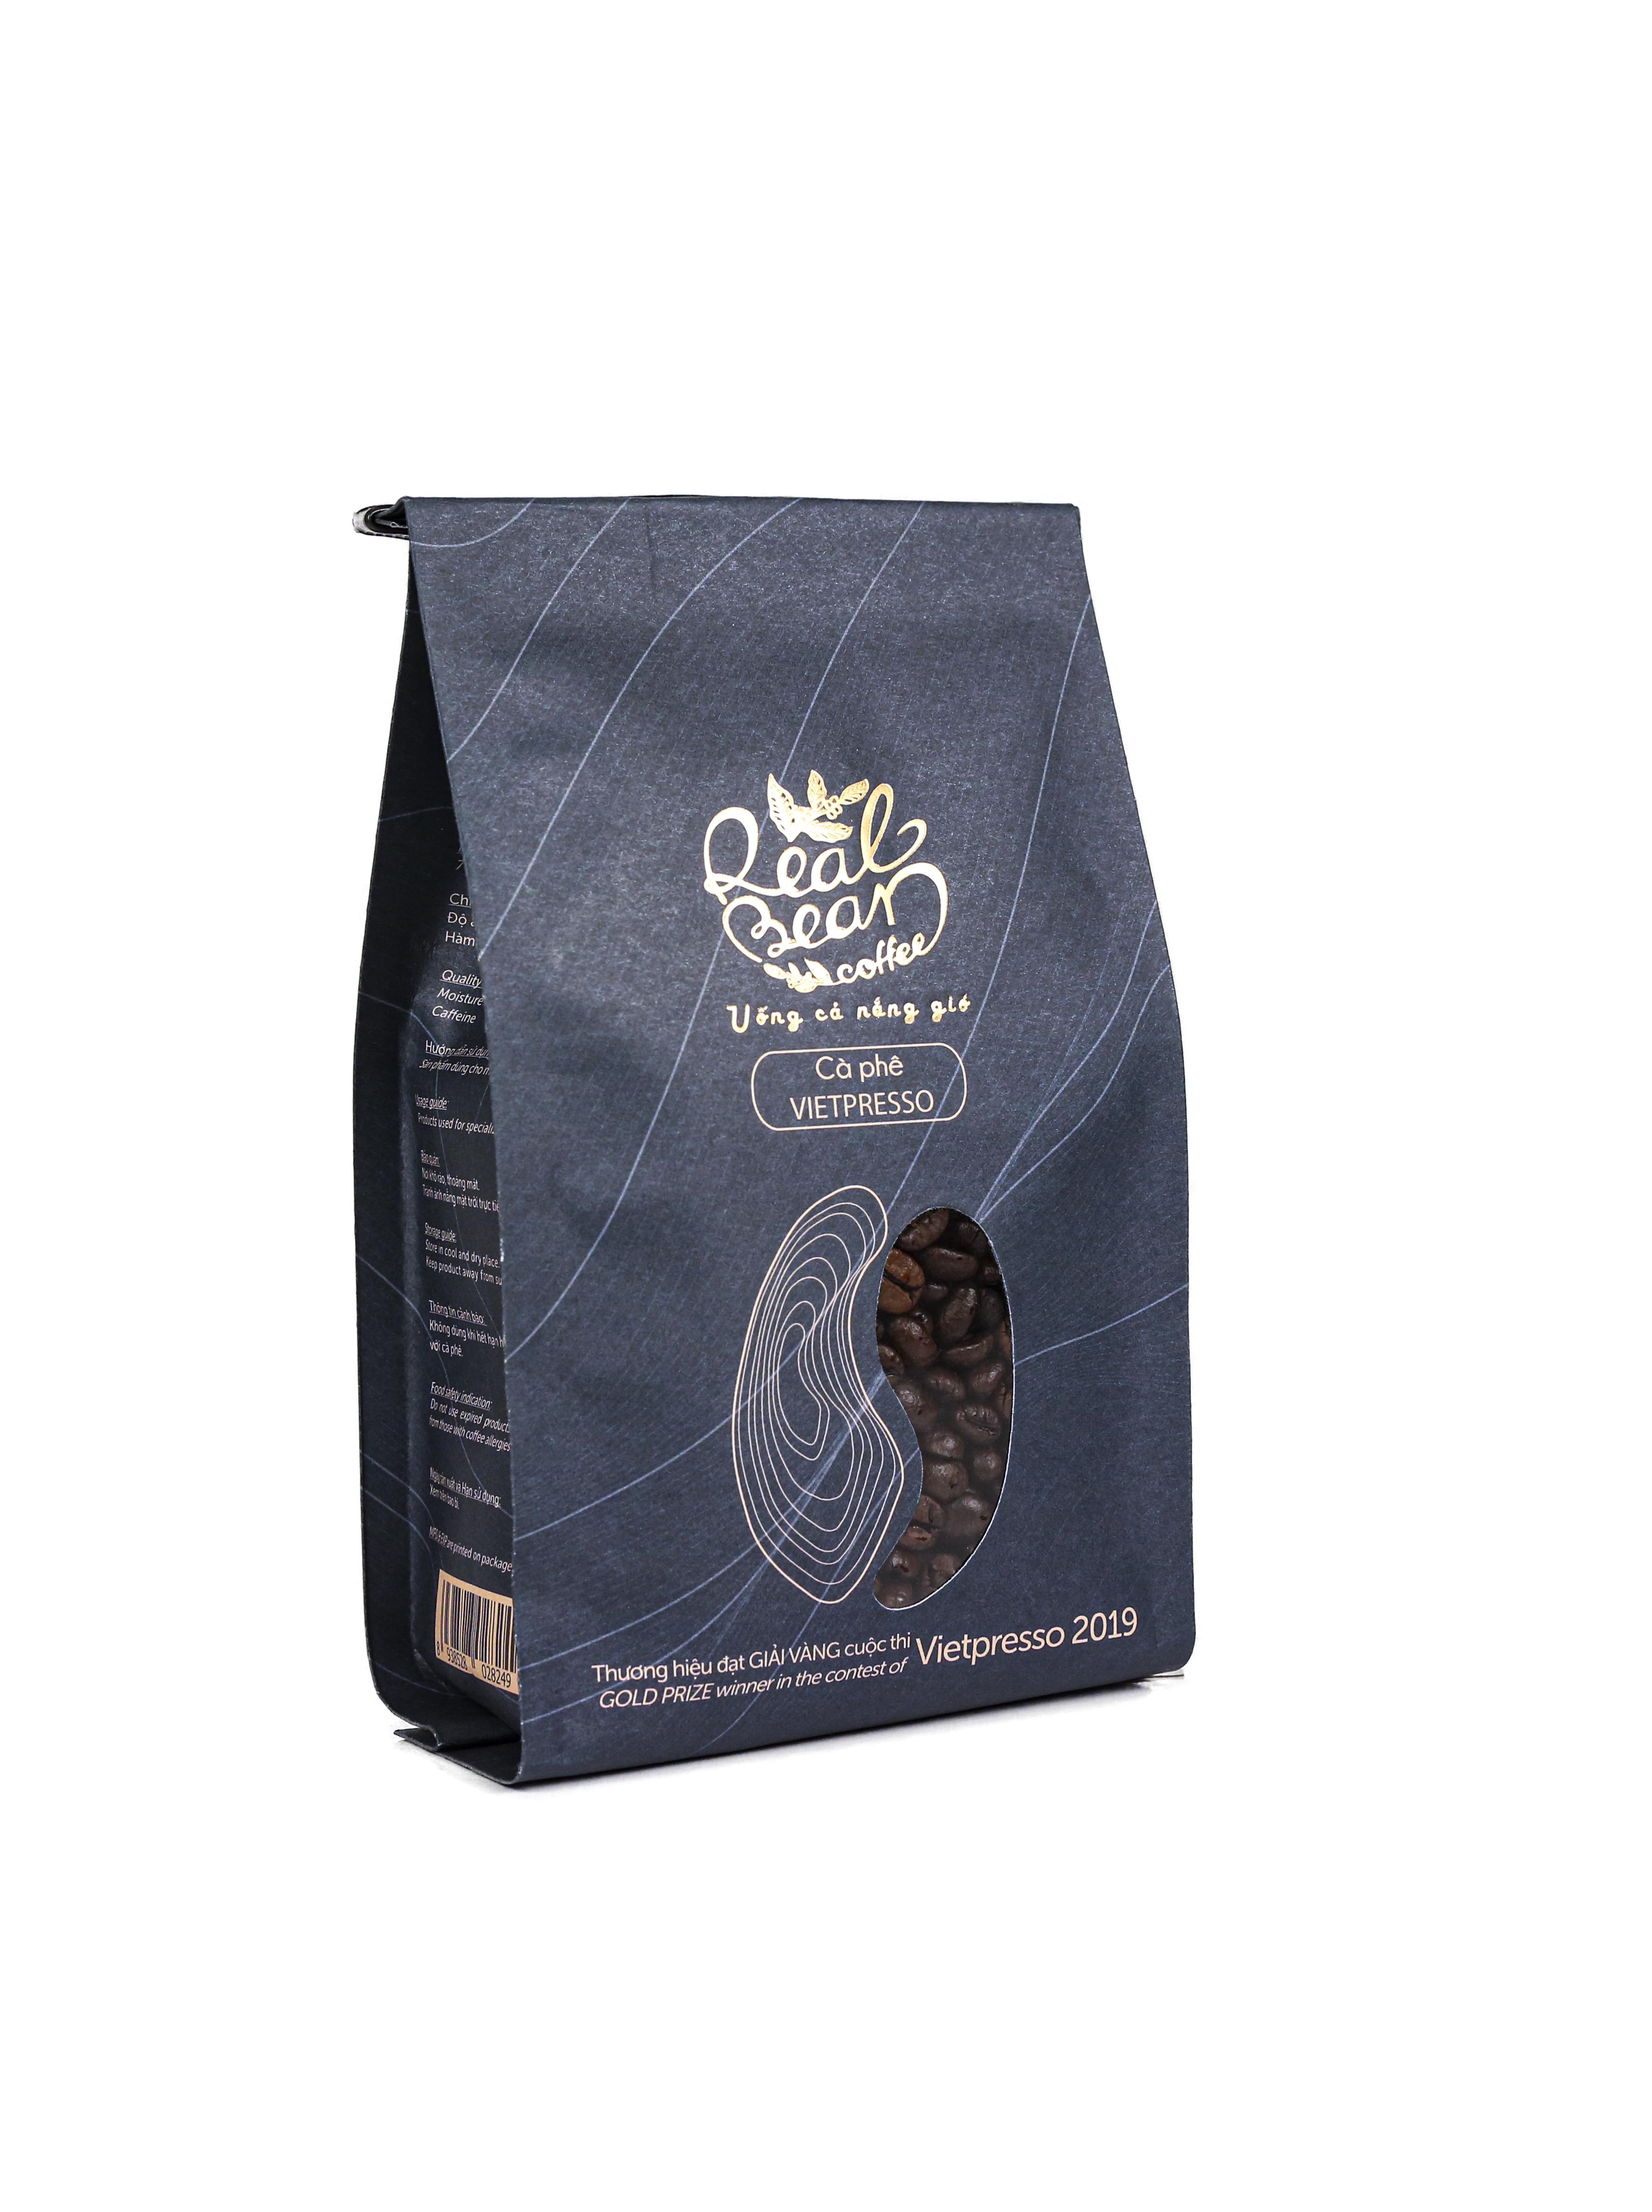 Cà phê hạt Vietpresso nguyên chất Real Bean Coffee 500g (không hộp)